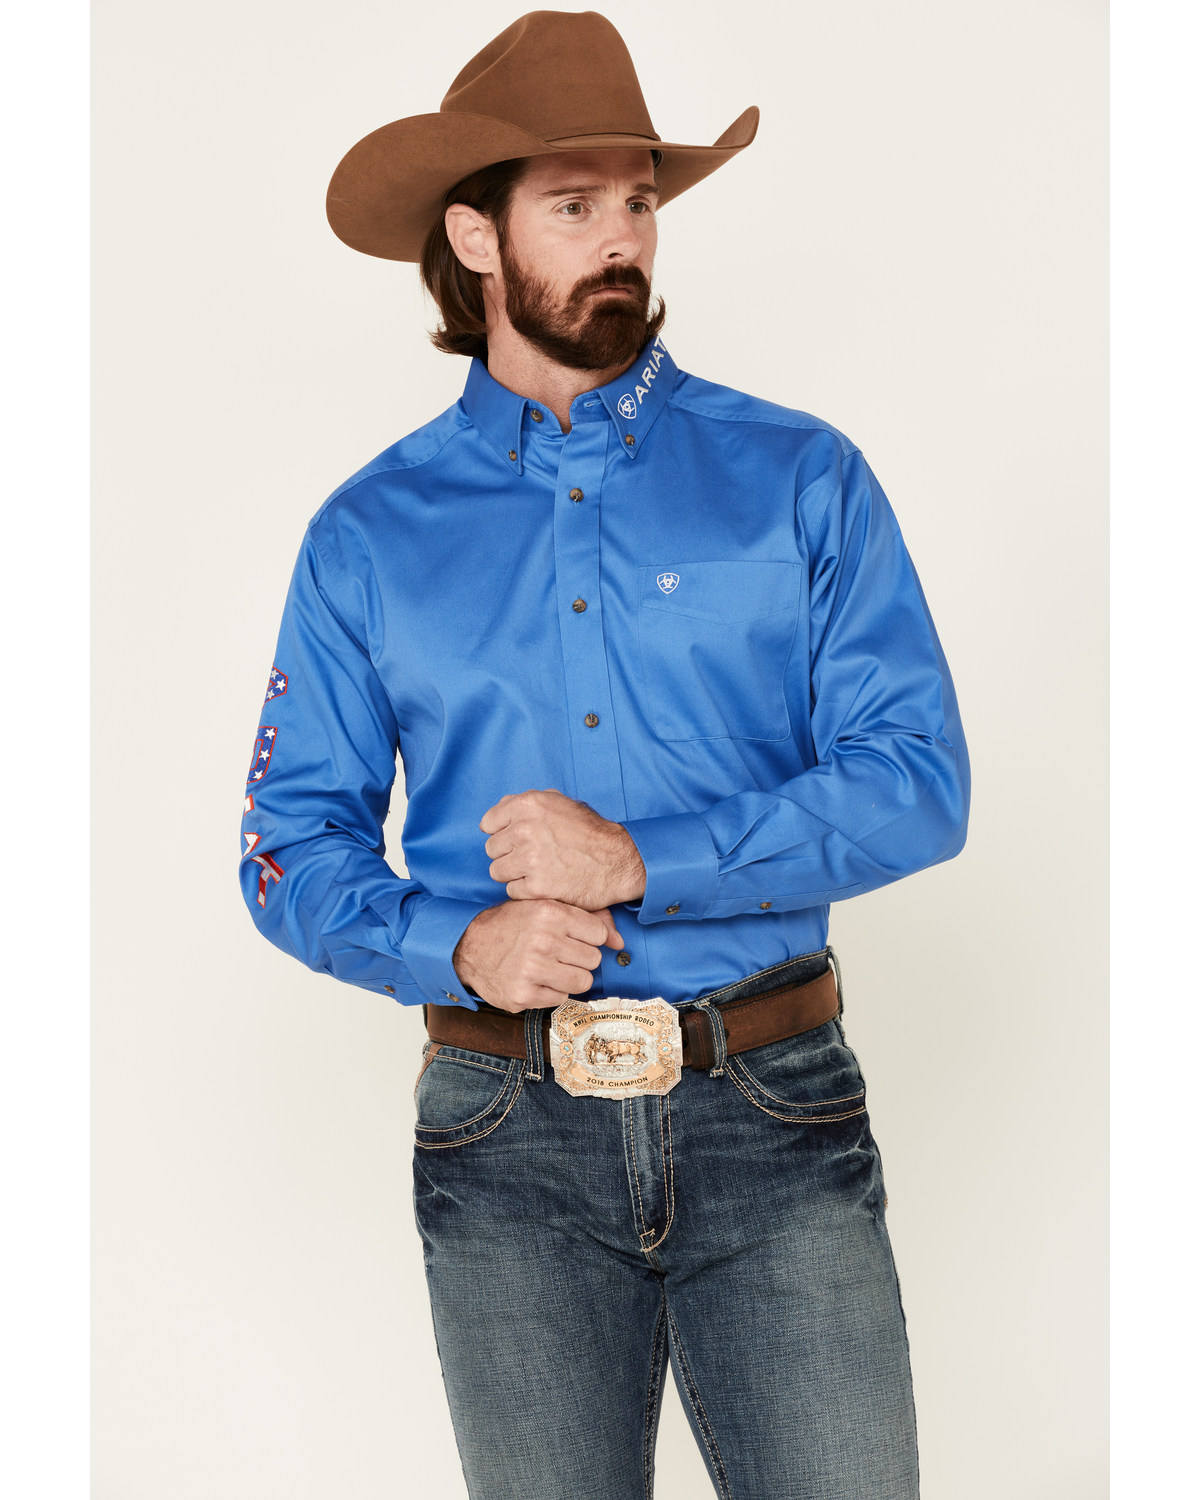 Ariat Men's Blue Team Logo Button Long Sleeve Western Shirt - Big